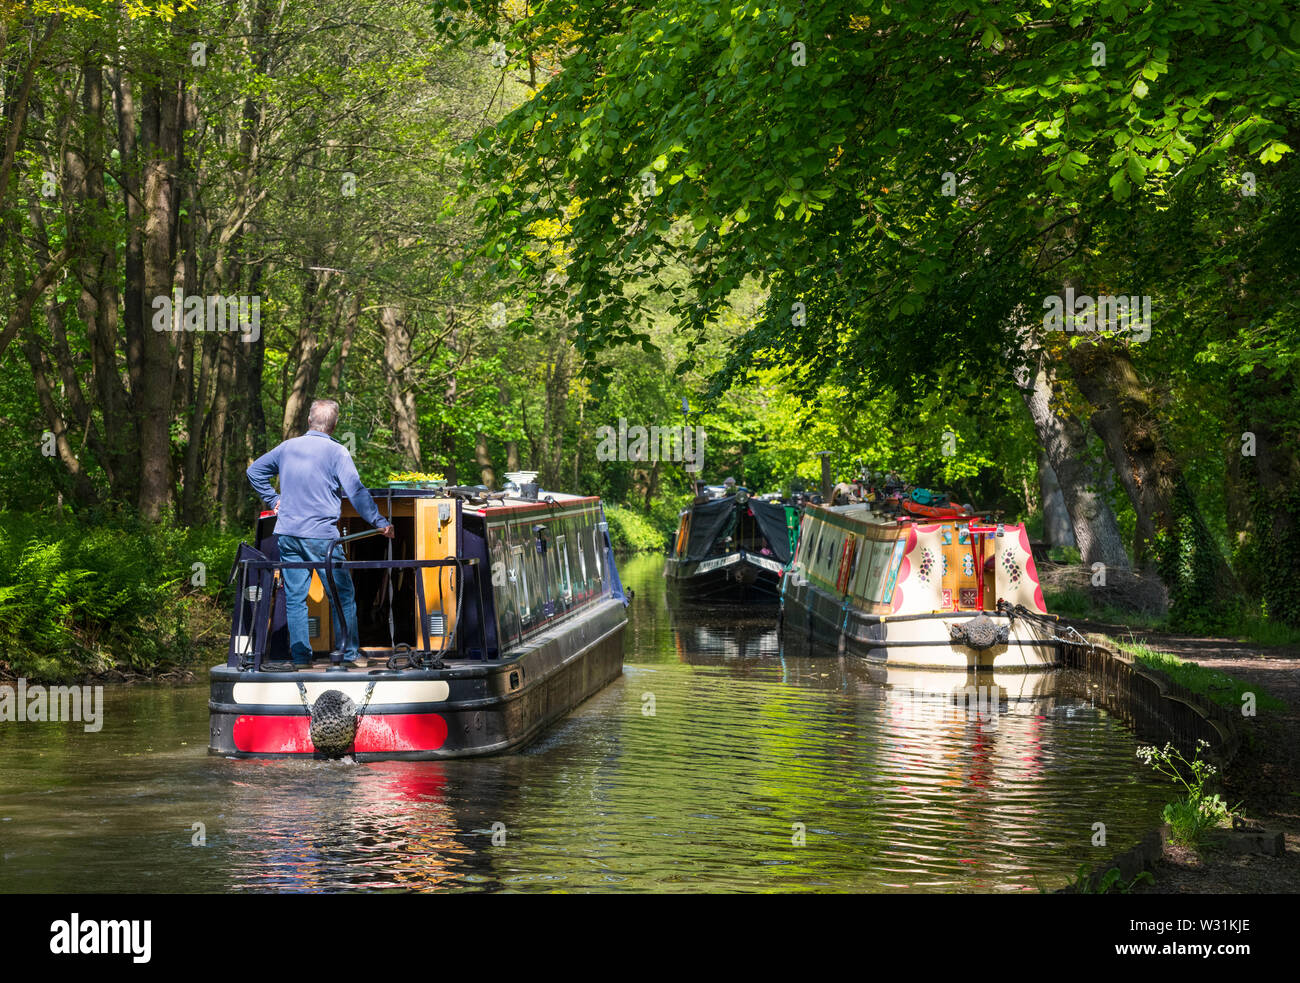 Kanal Boot auf der Llangollen Canal in der Nähe von Blakemere, Shropshire. Stockfoto